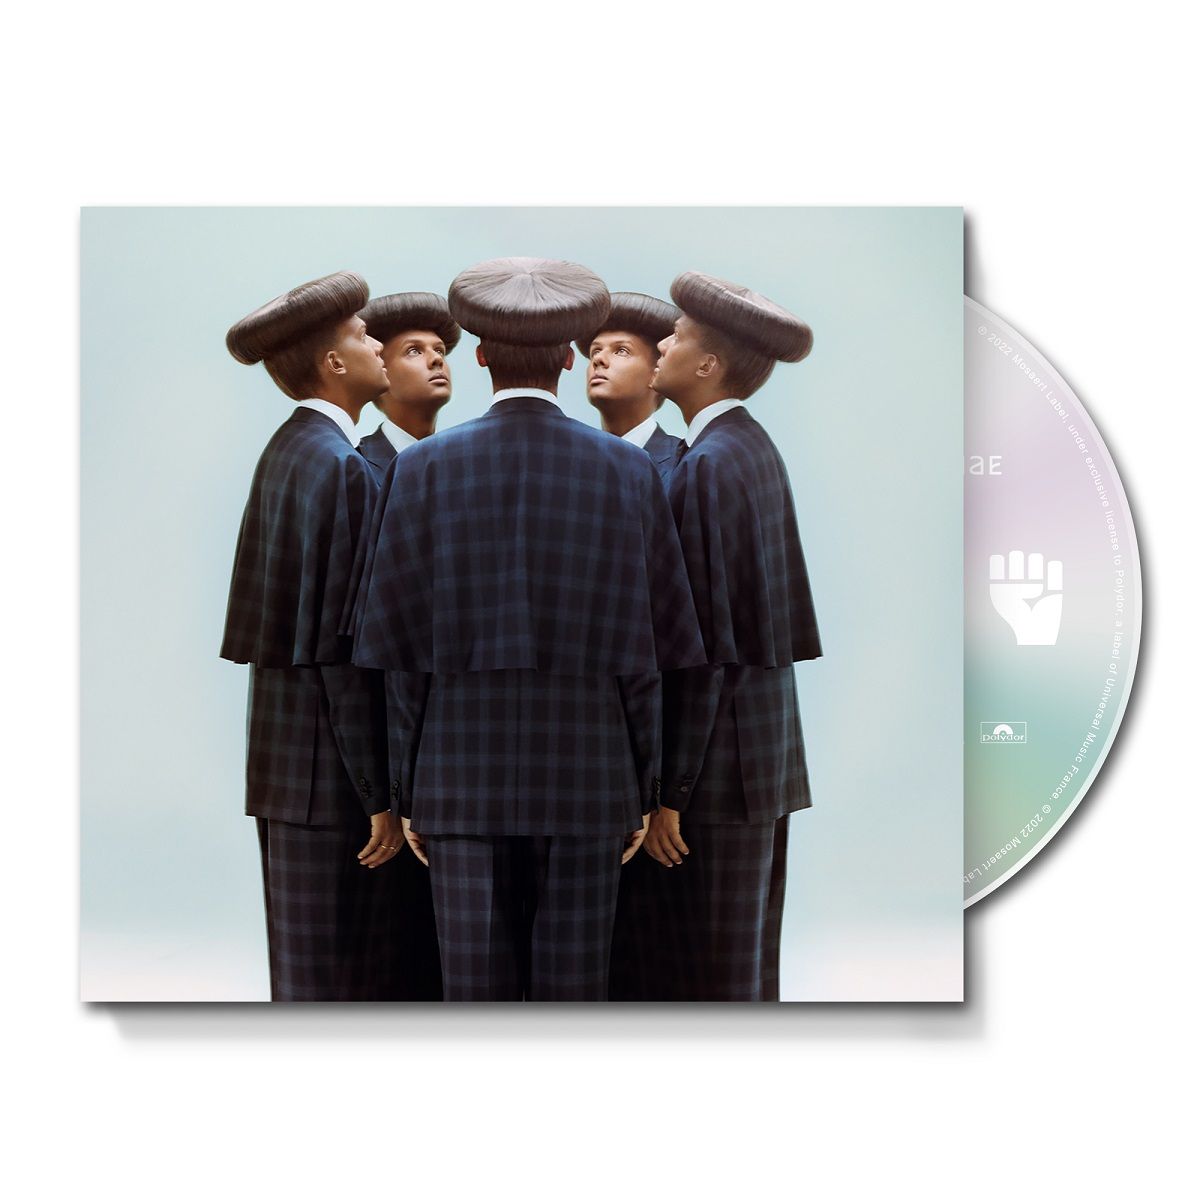  Stromae - Multitude CD